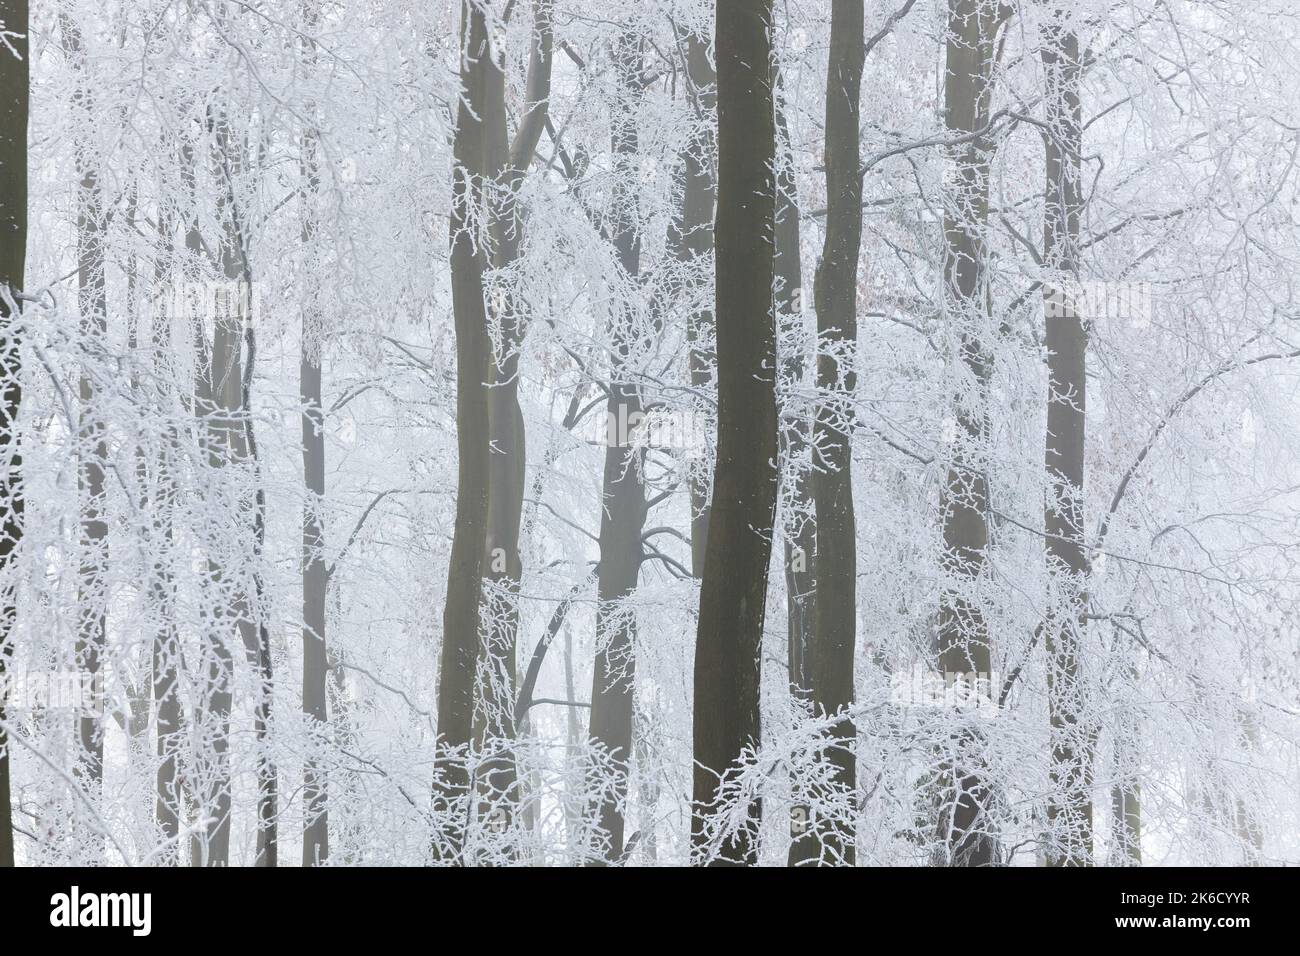 Arbres avec neige et gel, nr.Wotton, Gloucestershire, Angleterre, Royaume-Uni Banque D'Images